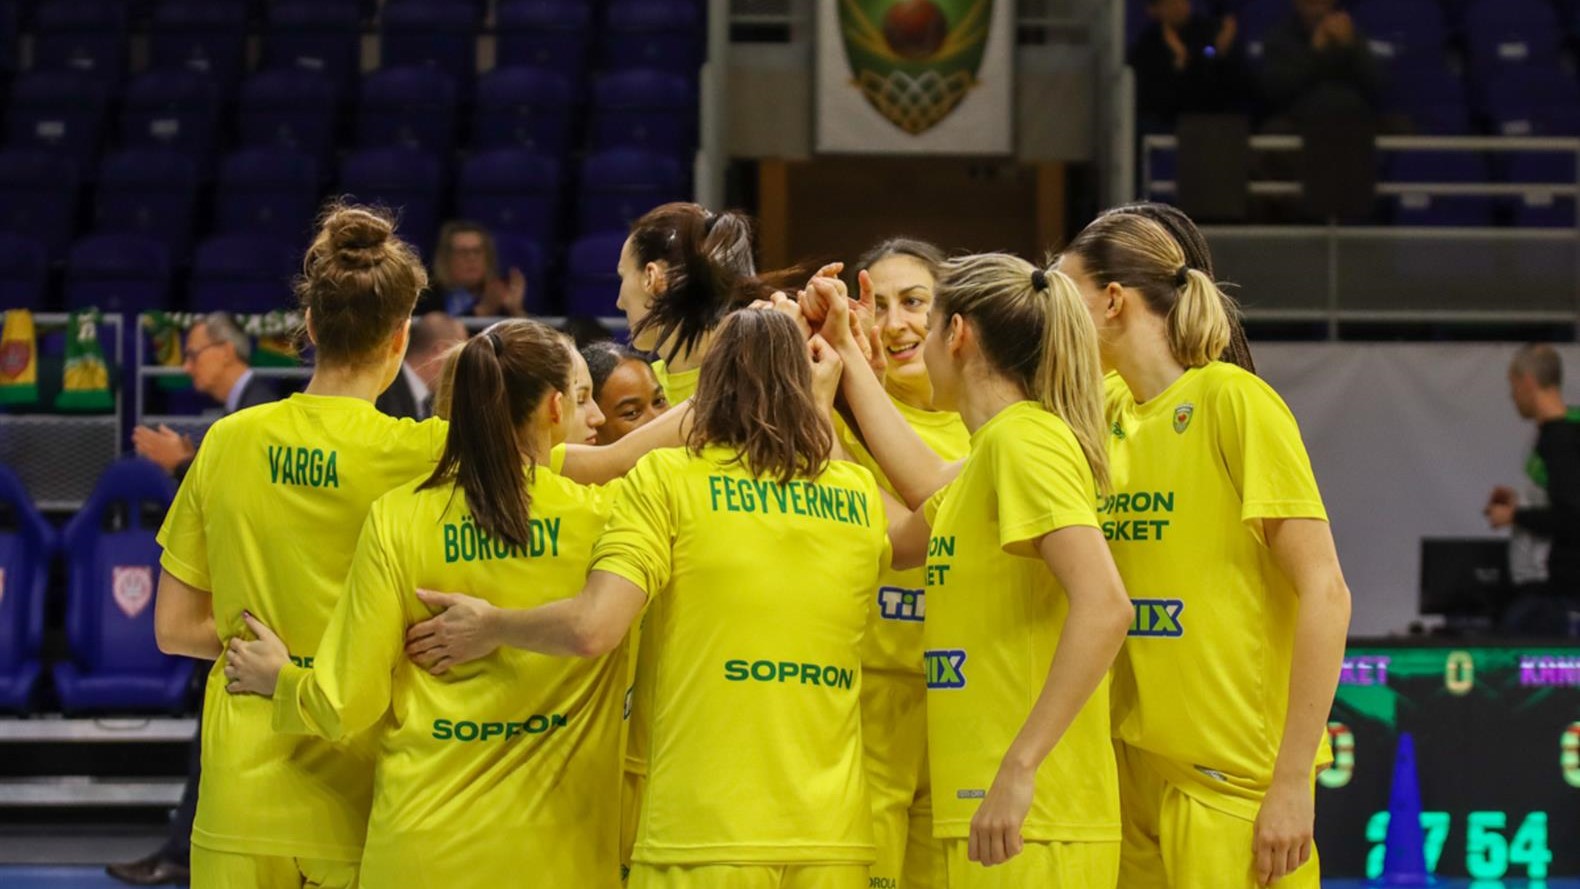 Szoros Sopron Basket győzelem a Mersim ellen